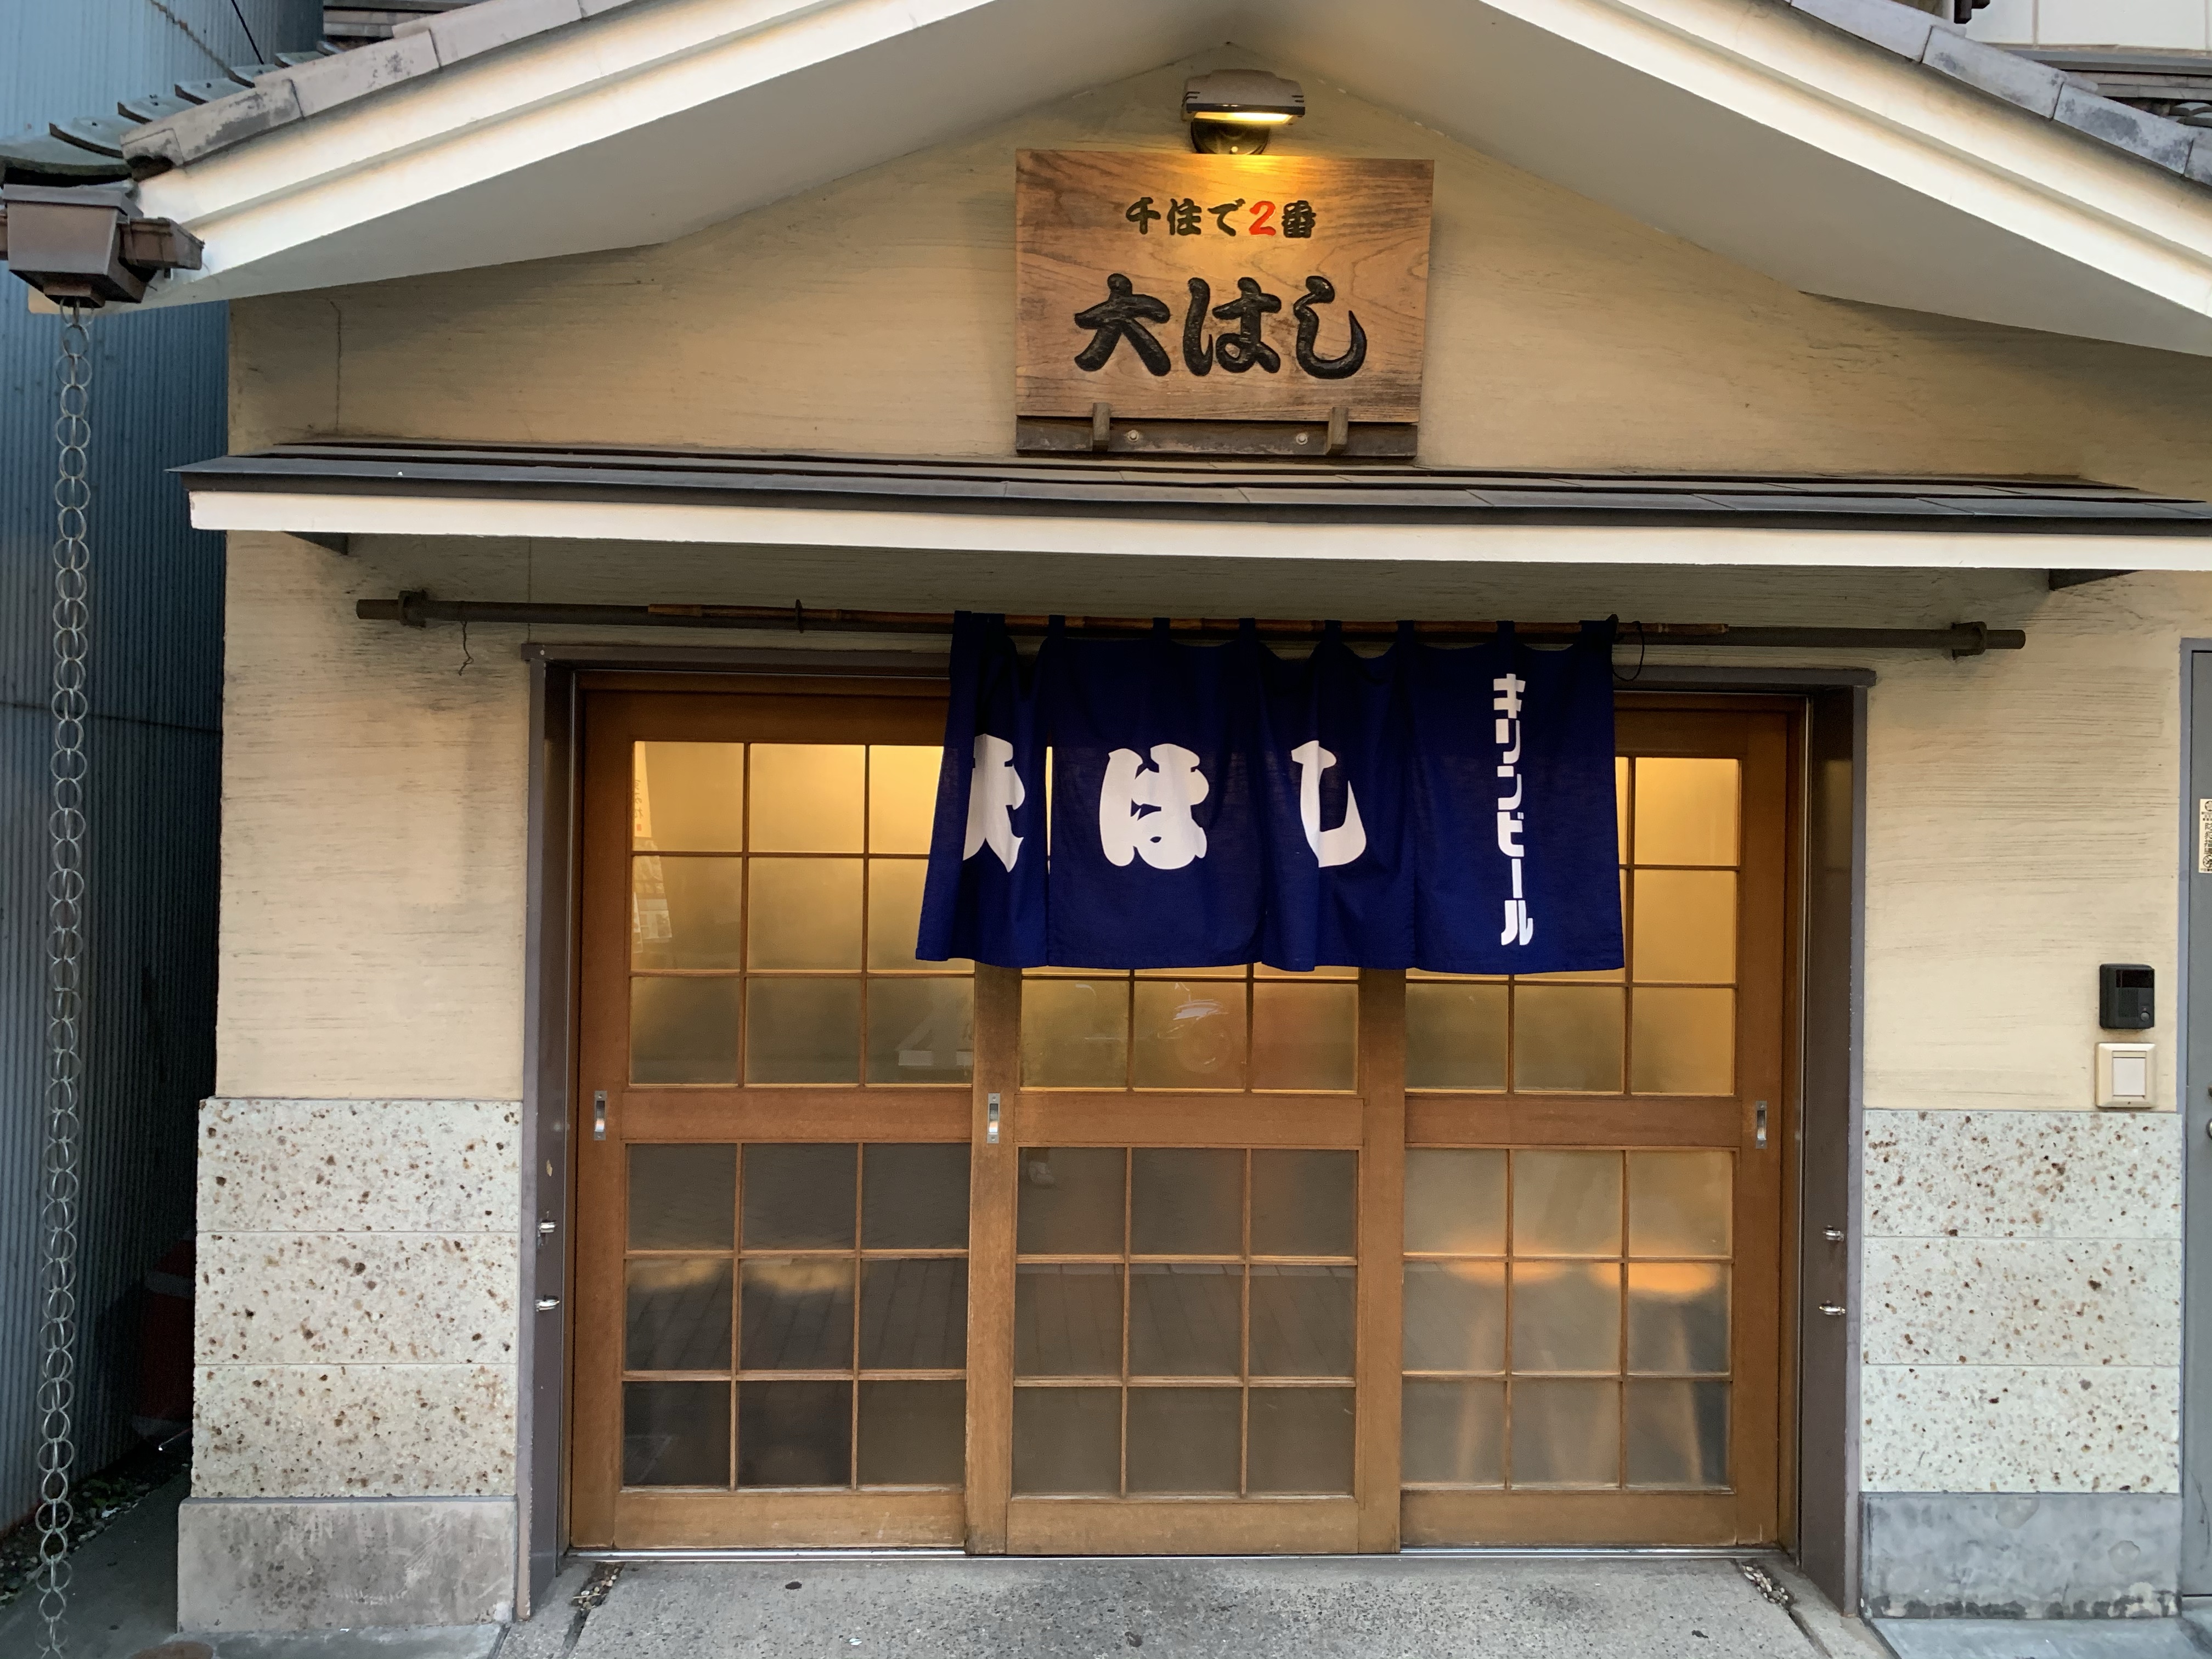 東京三大煮込みの店 大はしは凄く良い大衆酒場だった 東京 北千住 1877年創業 明治10年 老舗食堂 100年以上の歴史を持つ店舗を巡る旅